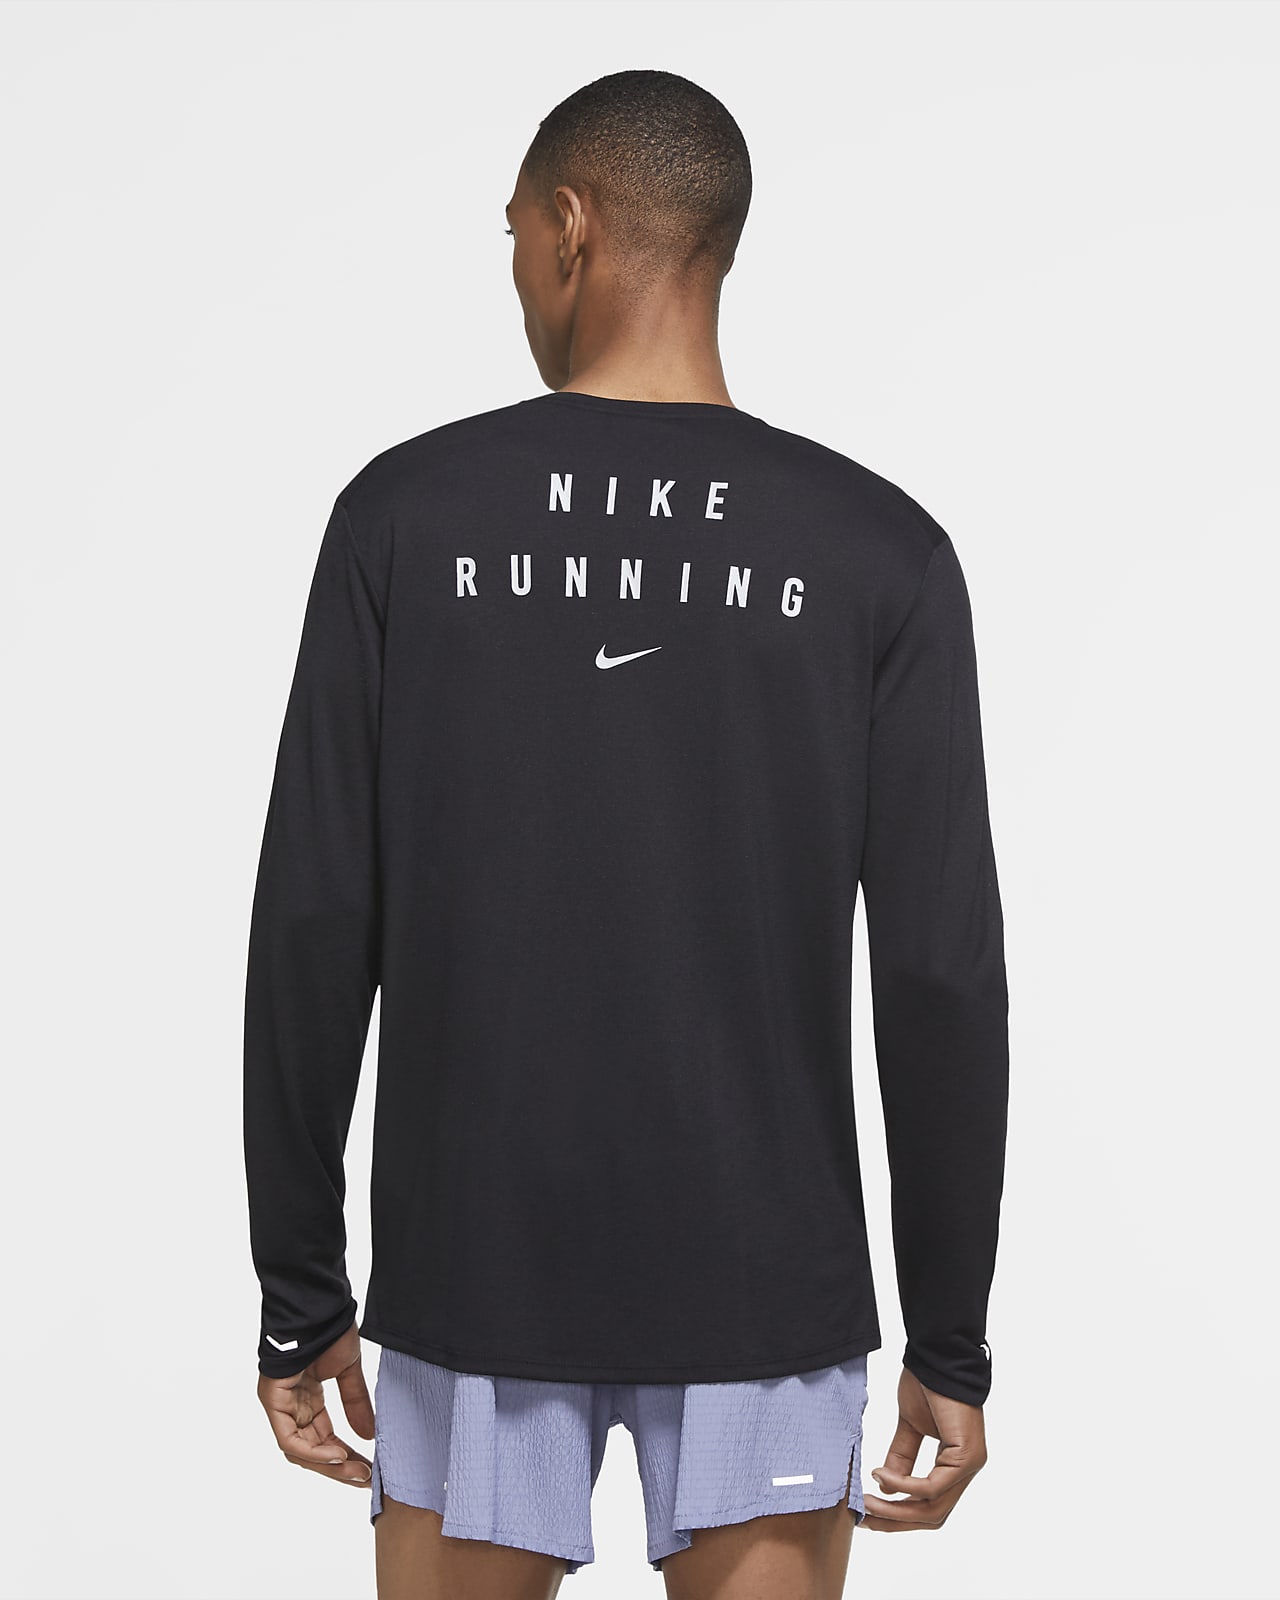 nike running shirt mens